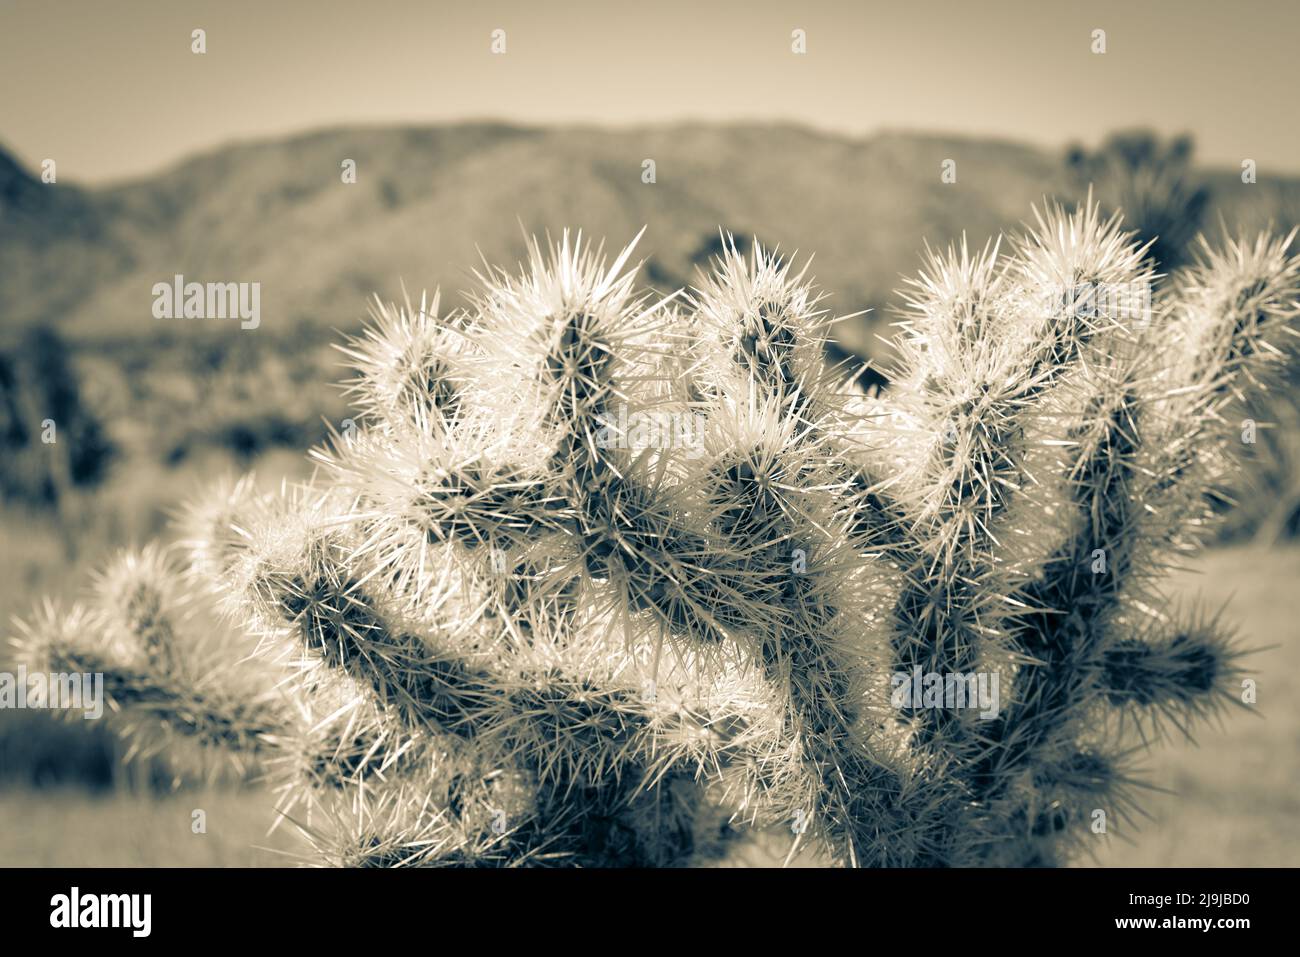 Le jardin unique de cactus de la Jolla avec des montagnes lointaines dans le parc national de Joshua Tree dans le désert de Mojave, CA Banque D'Images